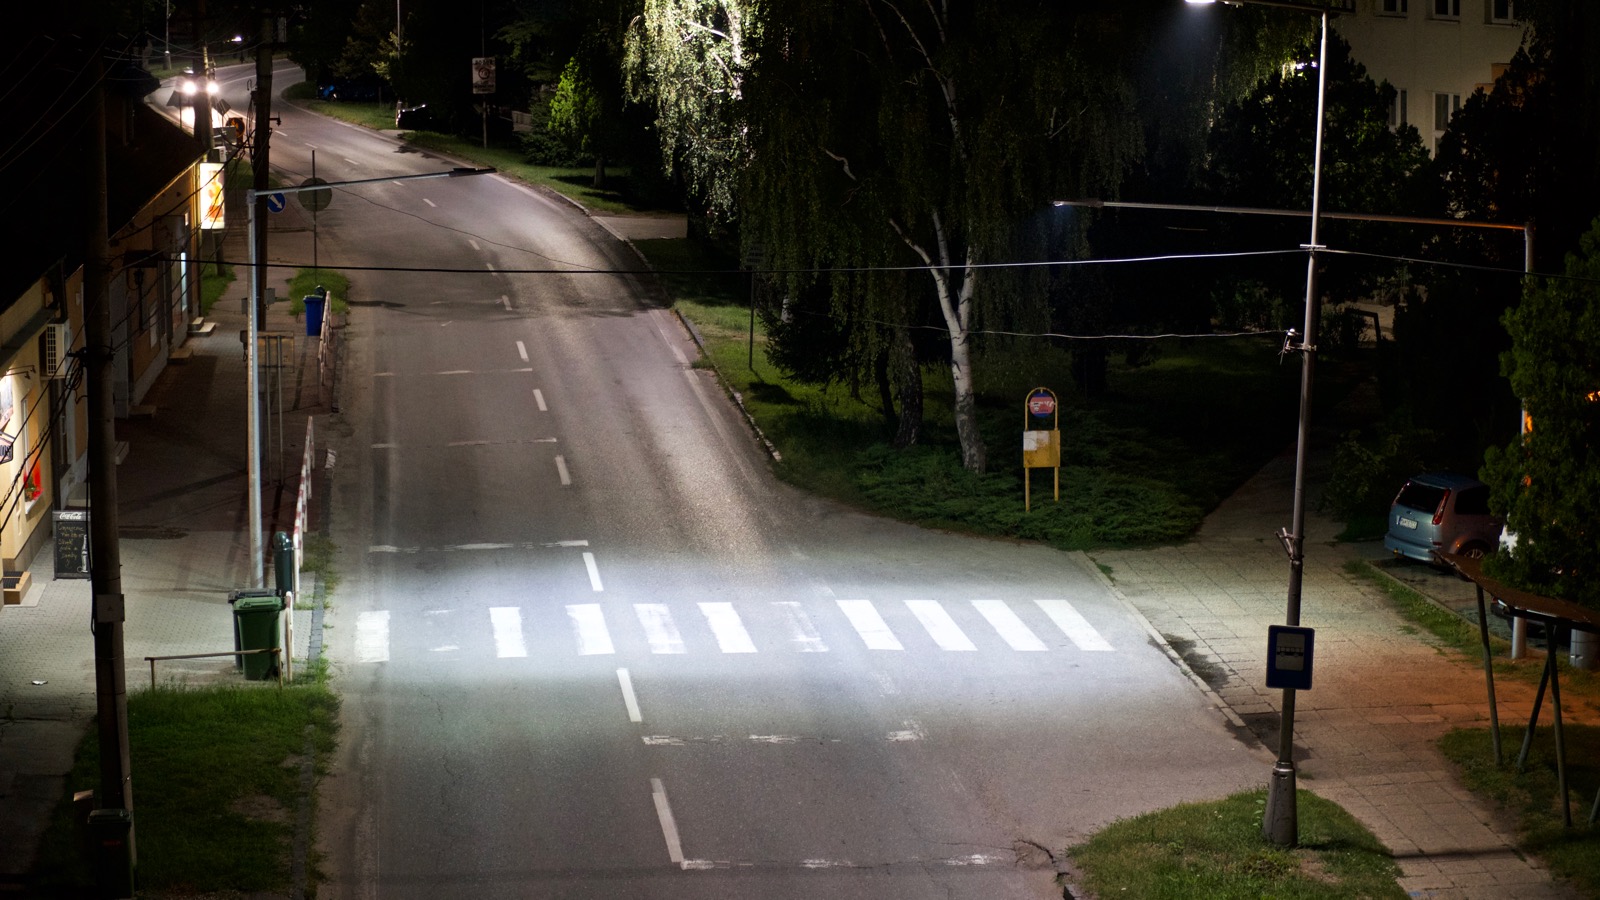 Safety lighting for crosswalks